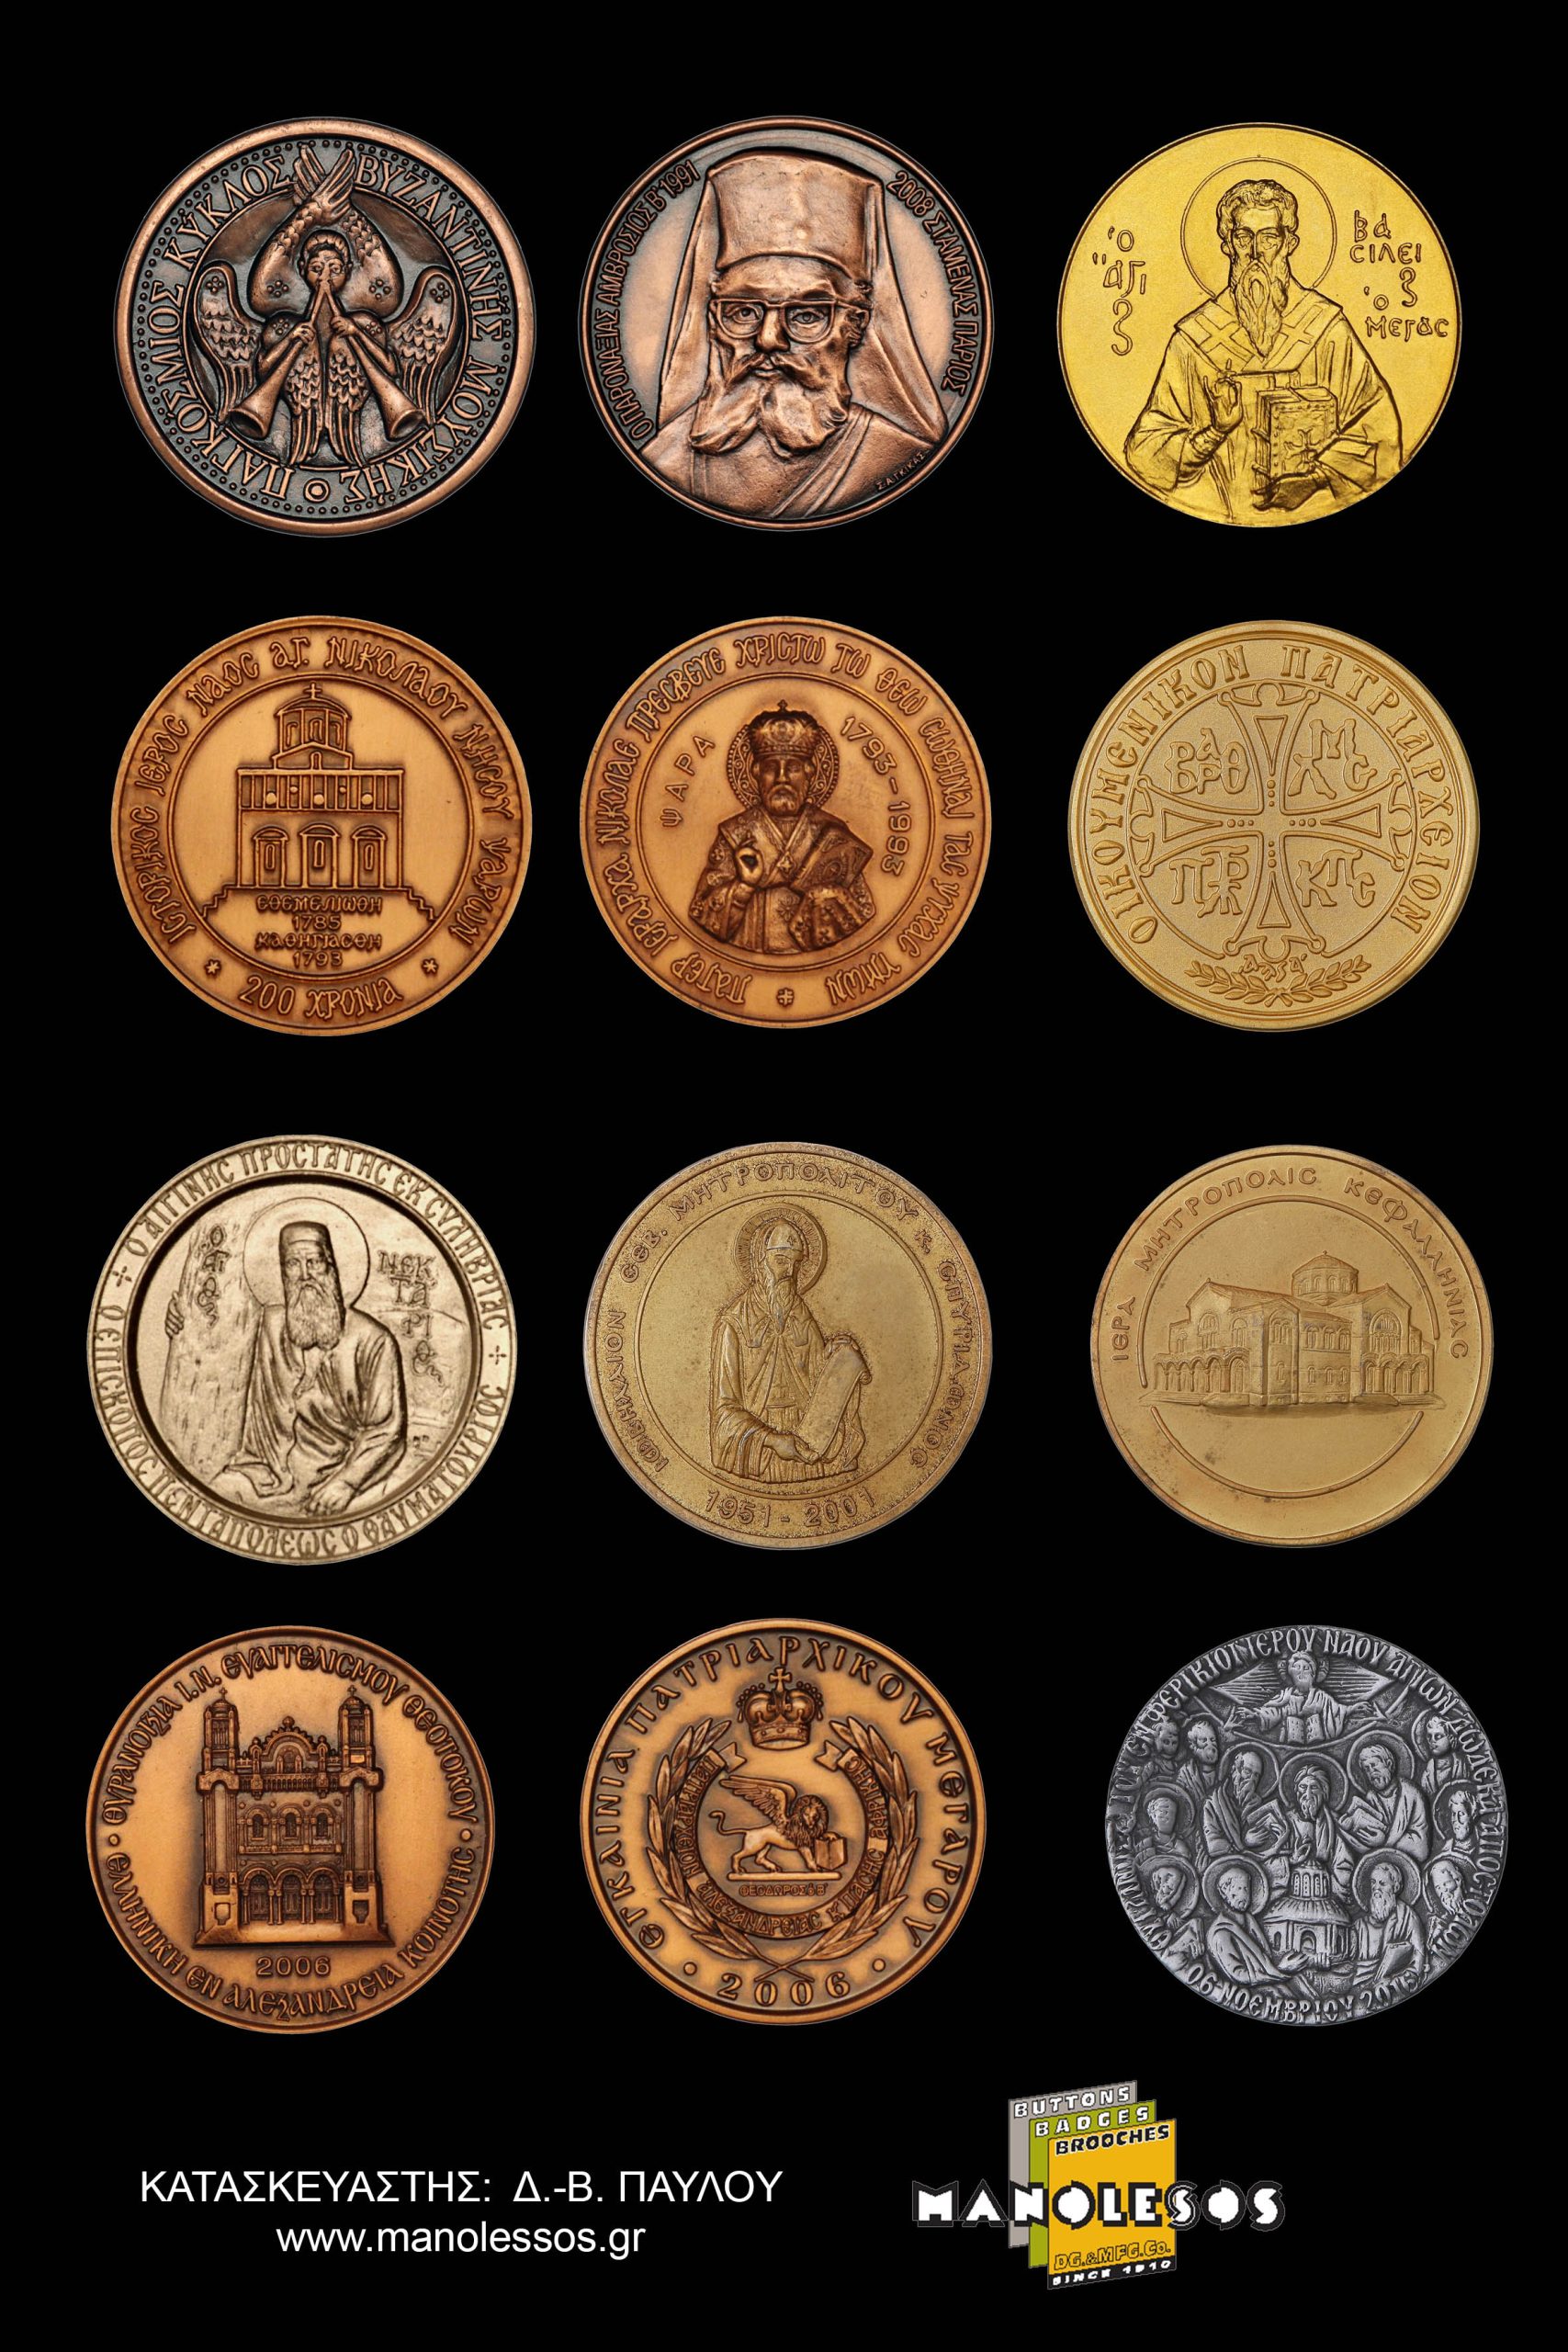 Εκκλησιαστικά Αναμνηστικά Μετάλλια από τη Μανωλέσος 002